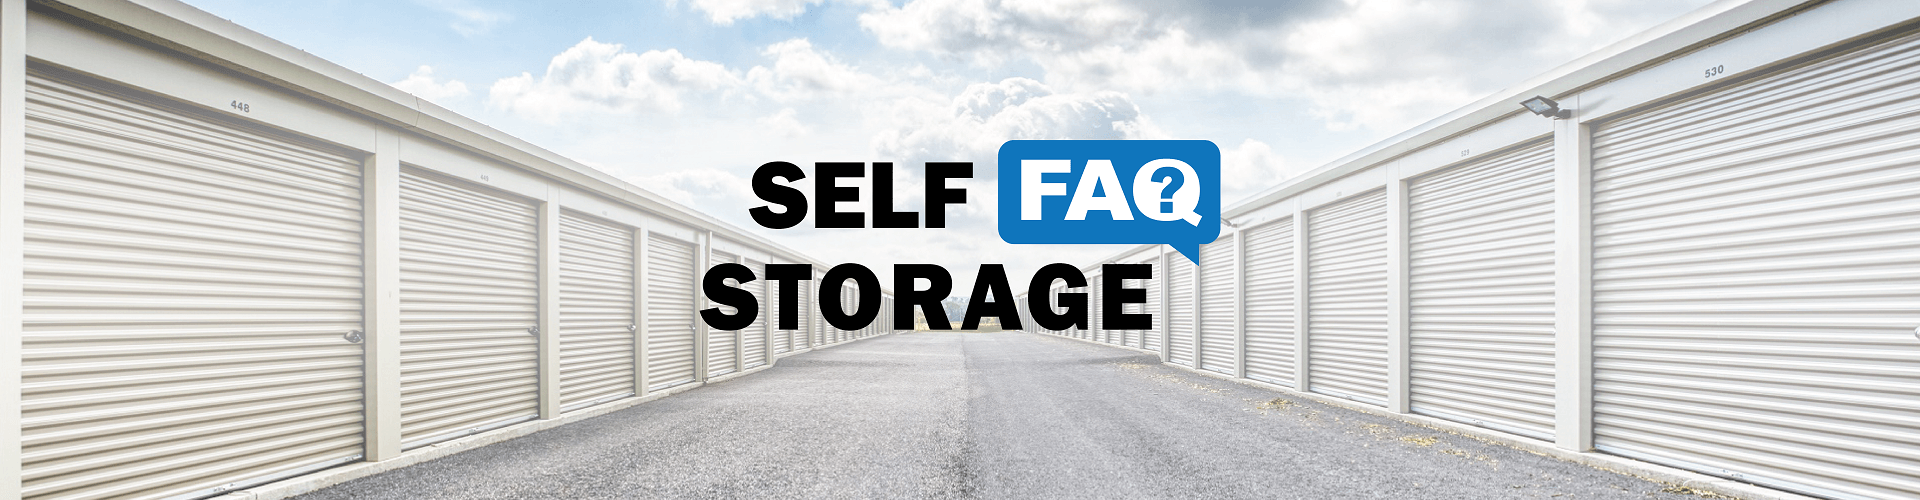 self storage faq - Pioneer Valley Storage